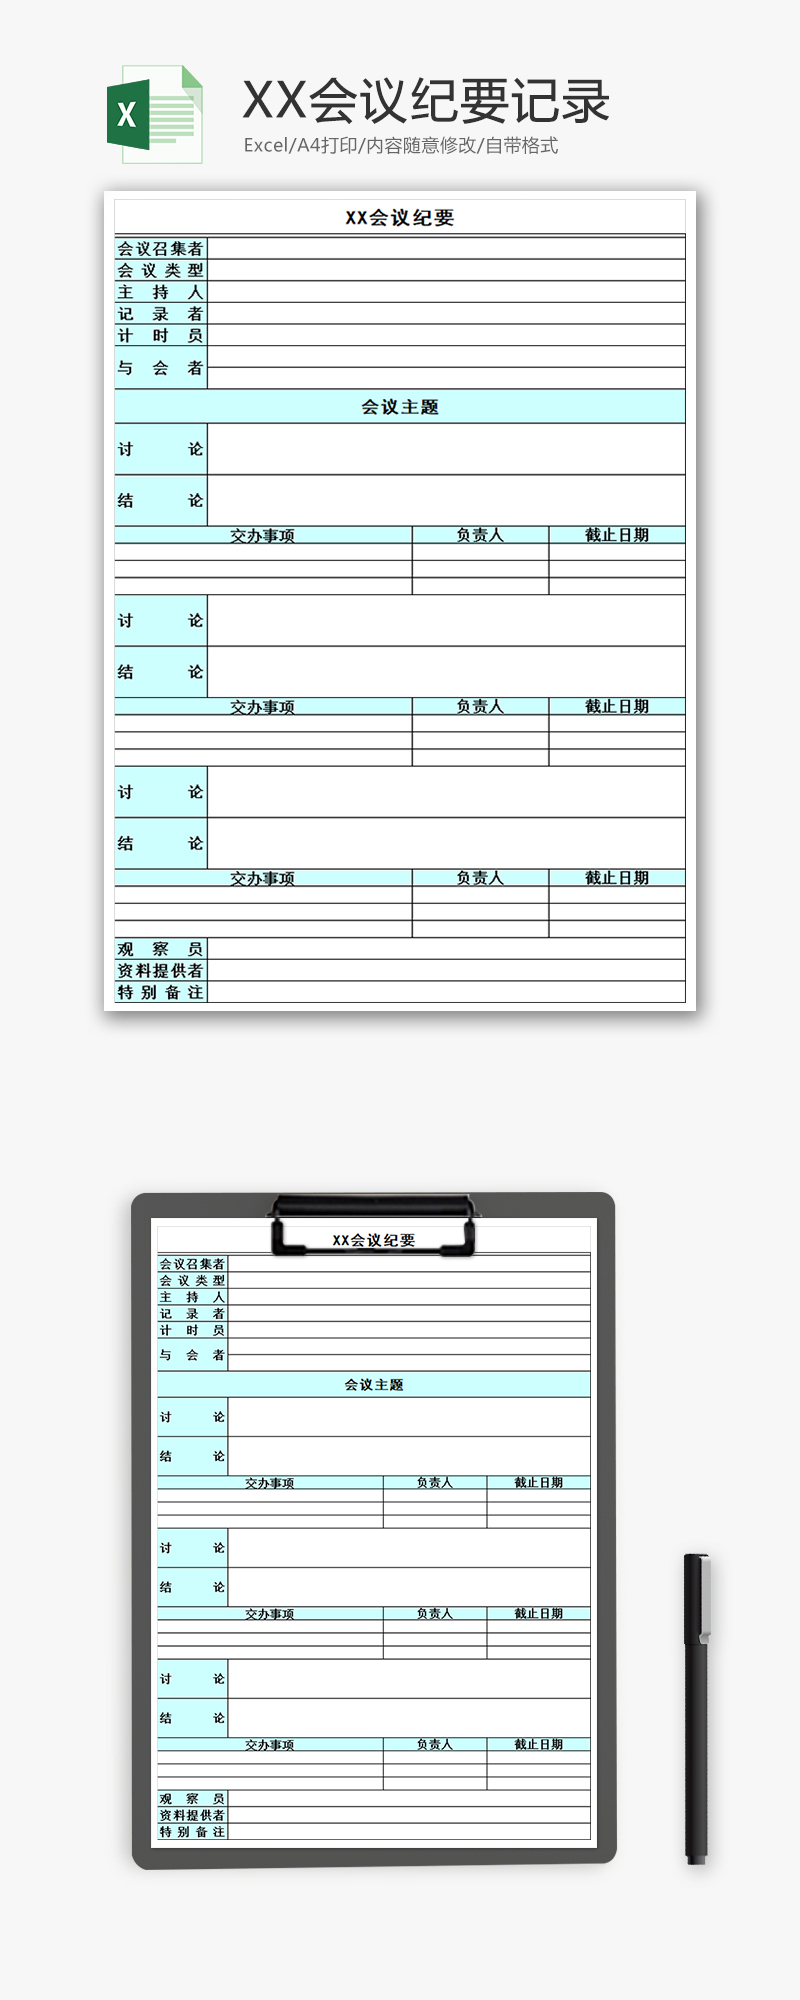 XX会议纪要记录Excel模板